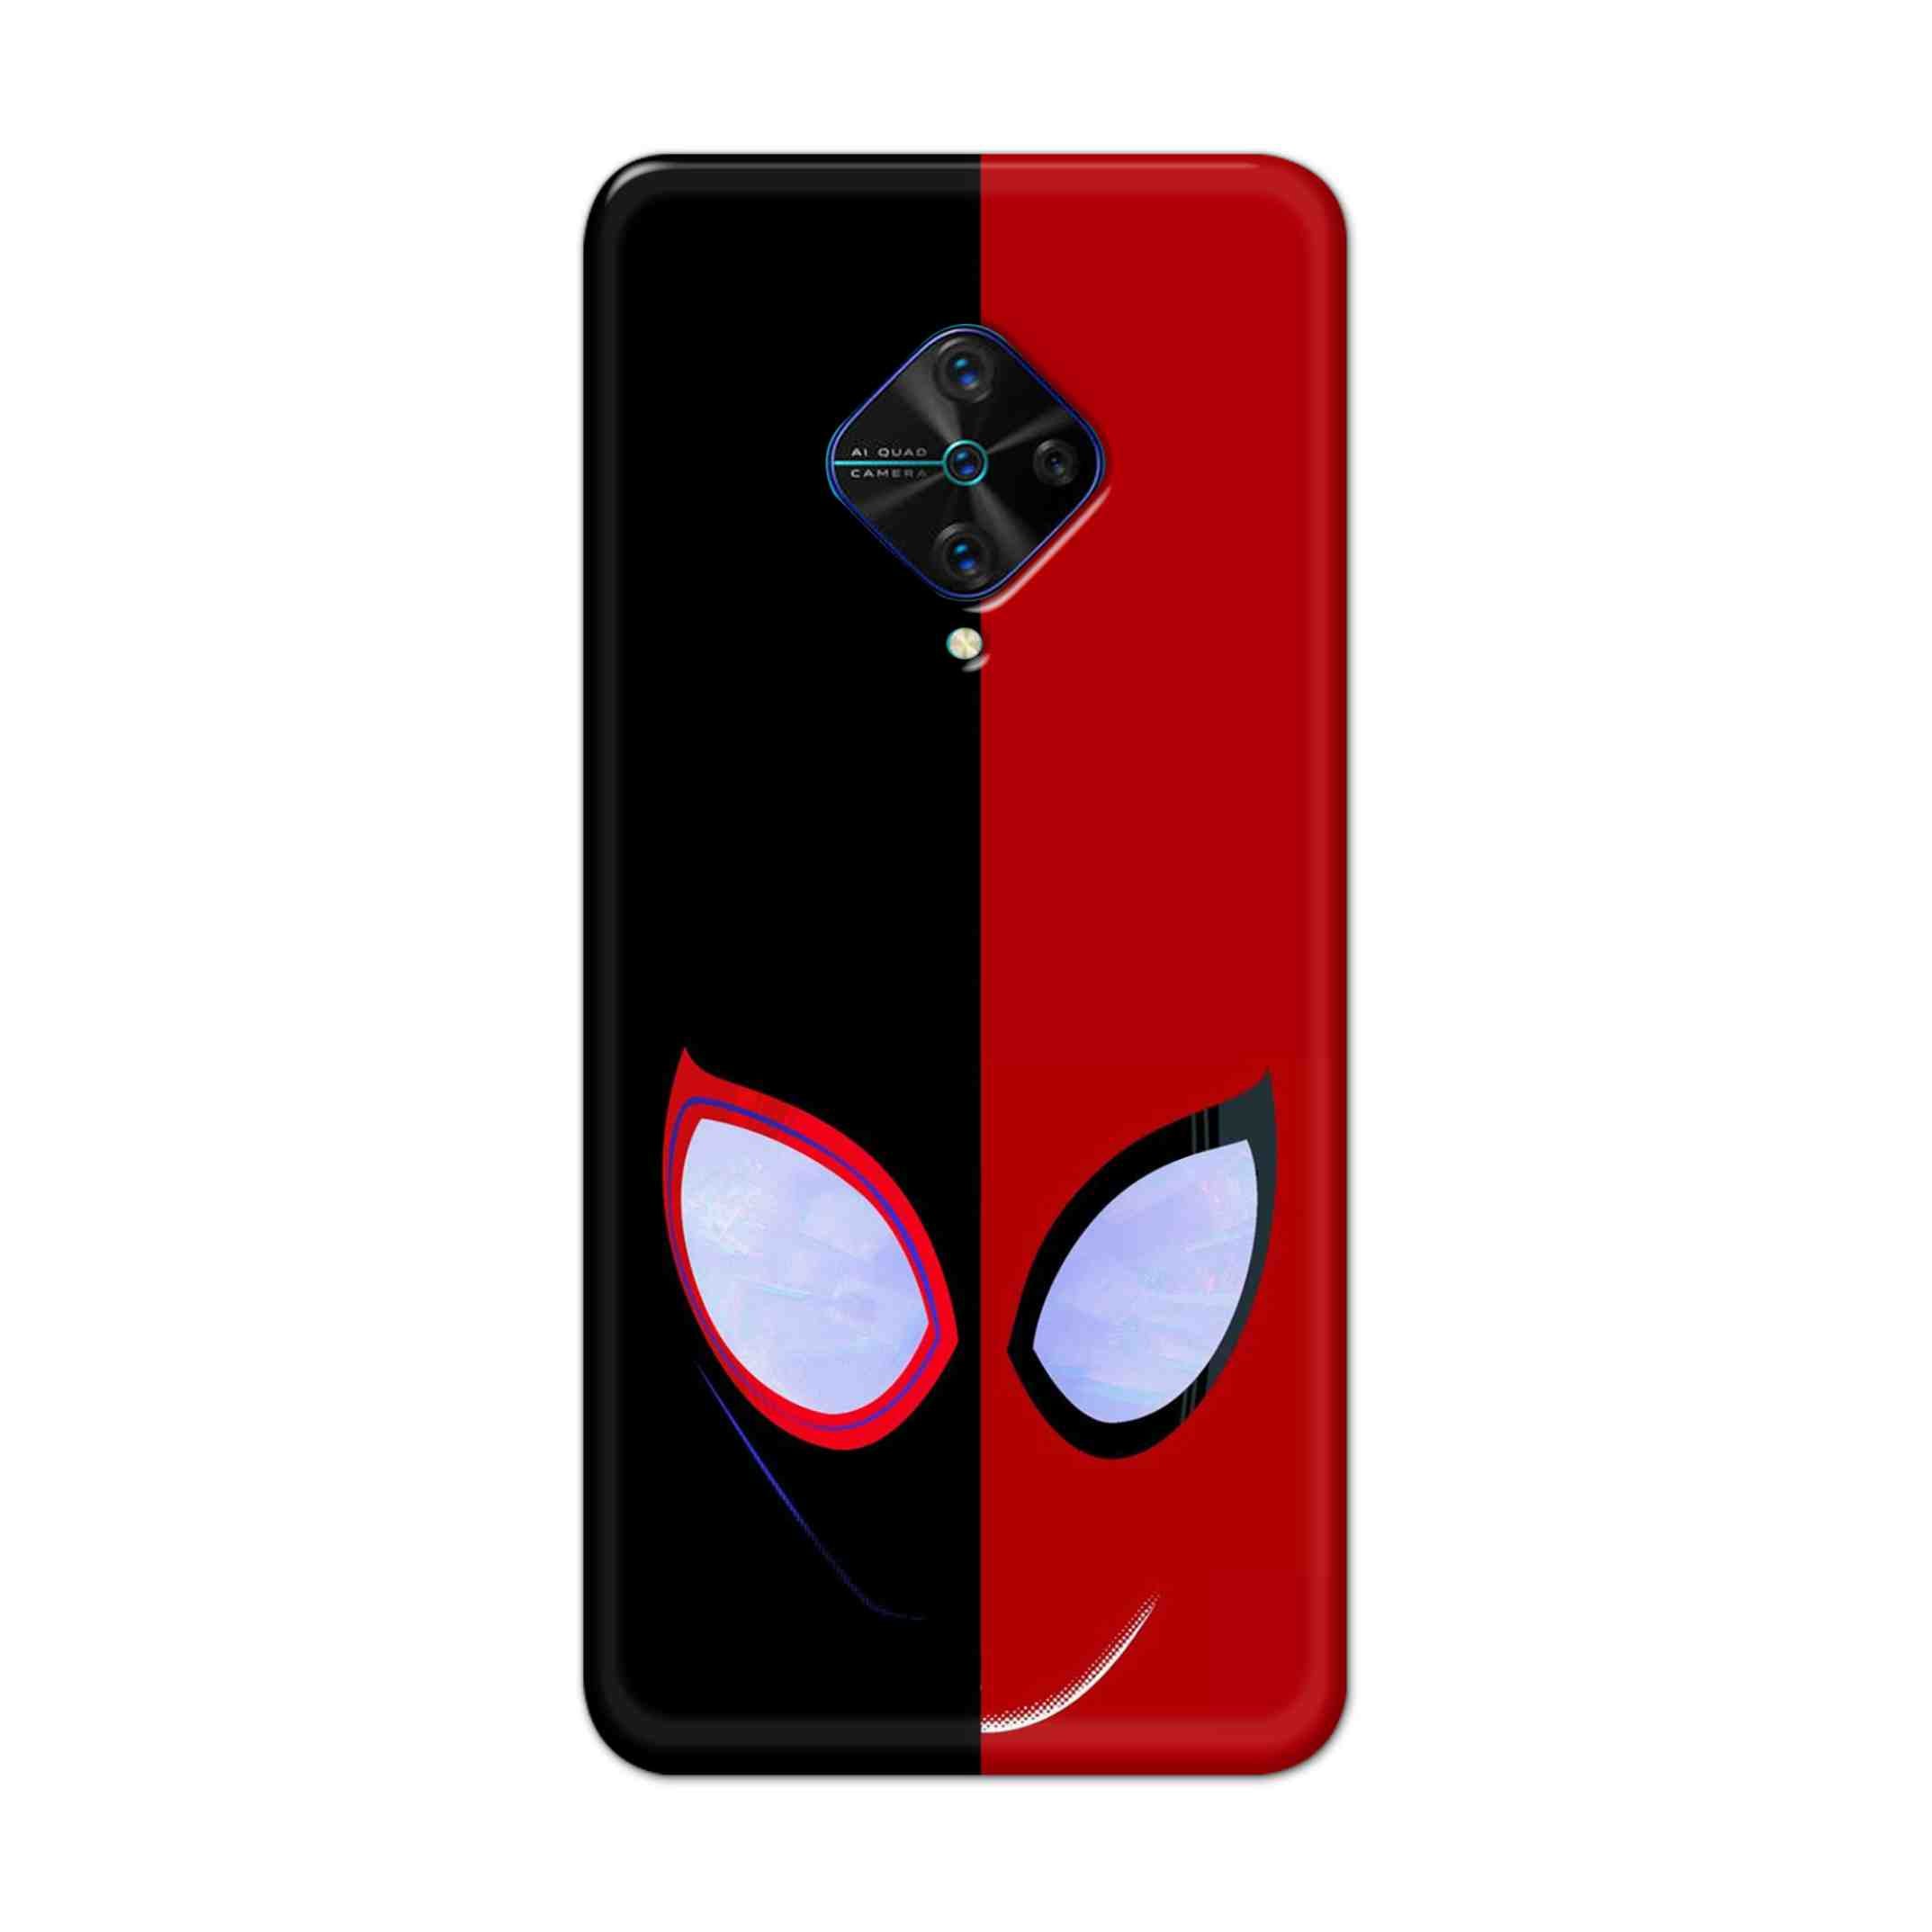 Buy Venom Vs Spiderman Hard Back Mobile Phone Case Cover For Vivo S1 Pro Online